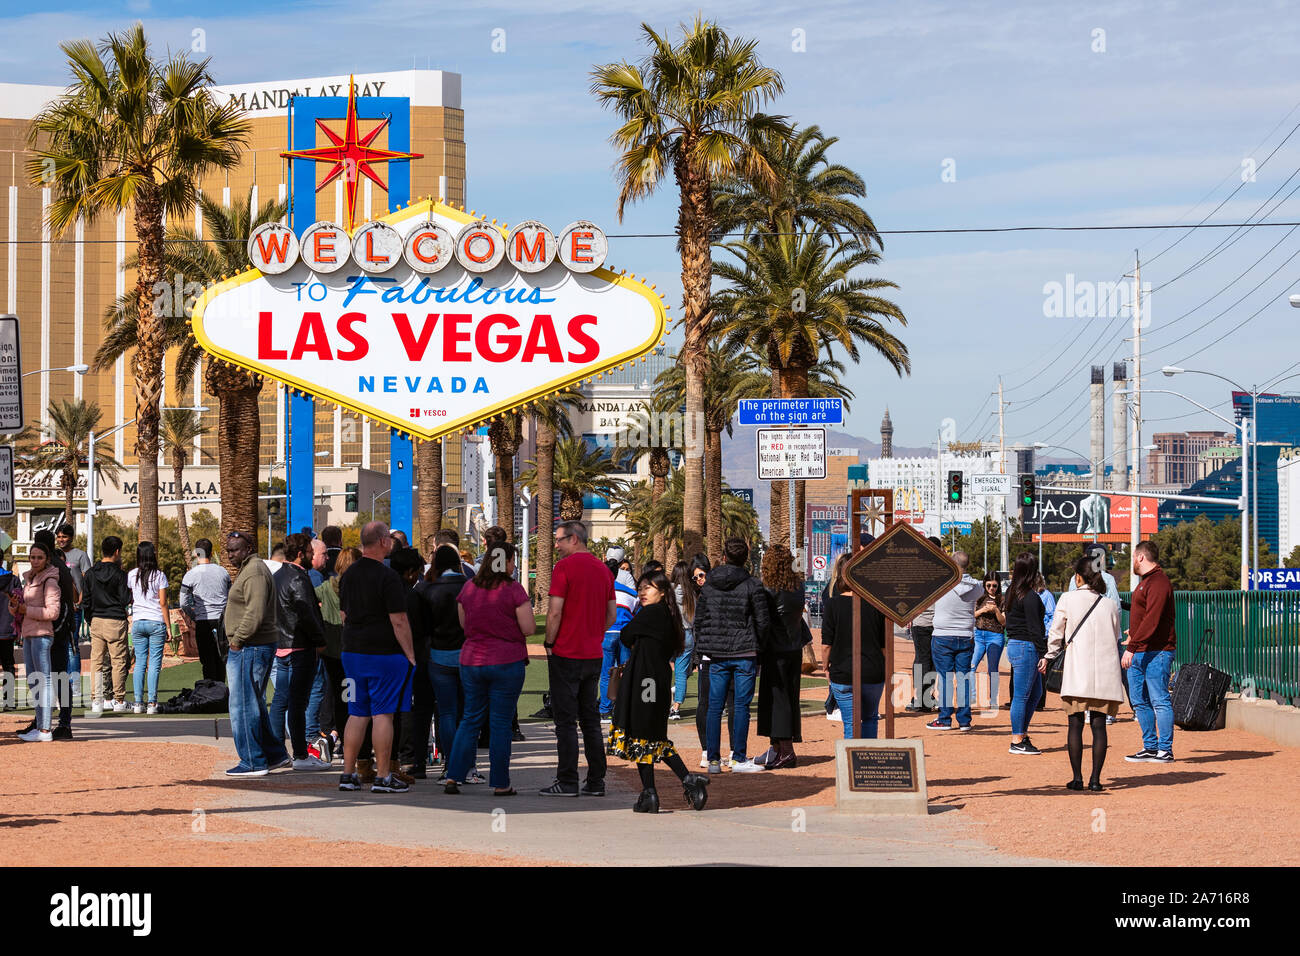 Eine Menge Touristen stehen in der Schlange für Fotos am Welcome to Fabulous Las Vegas Schild in Las Vegas, Nevada, USA Stockfoto